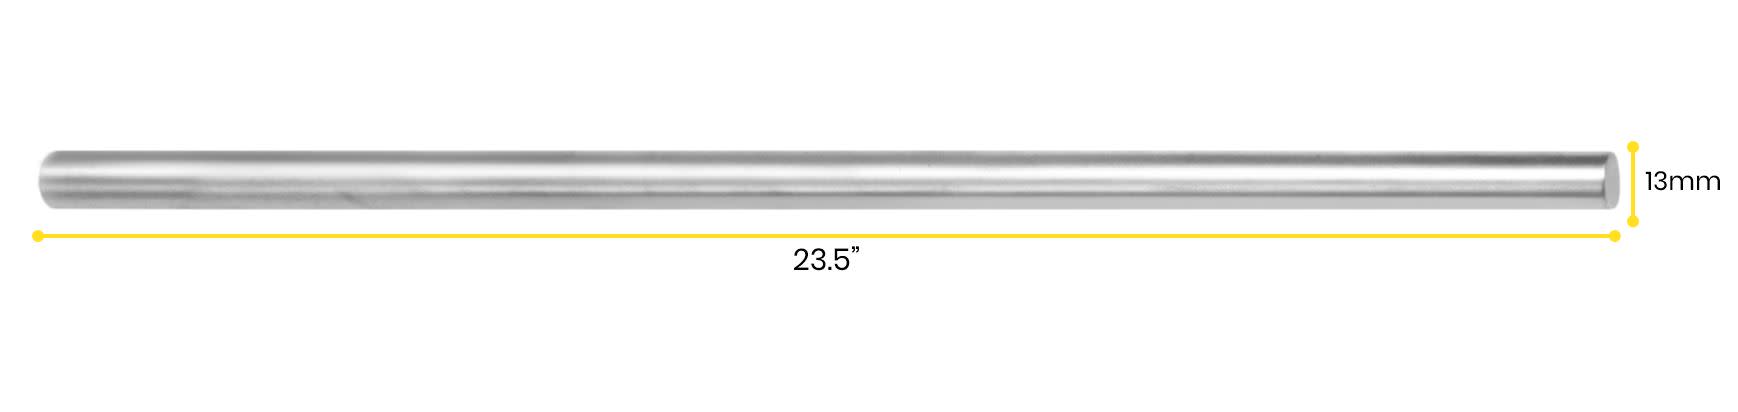 Retort Stand Rod, 23.6" (60cm) - Aluminum - Unthreaded, Round Shaft